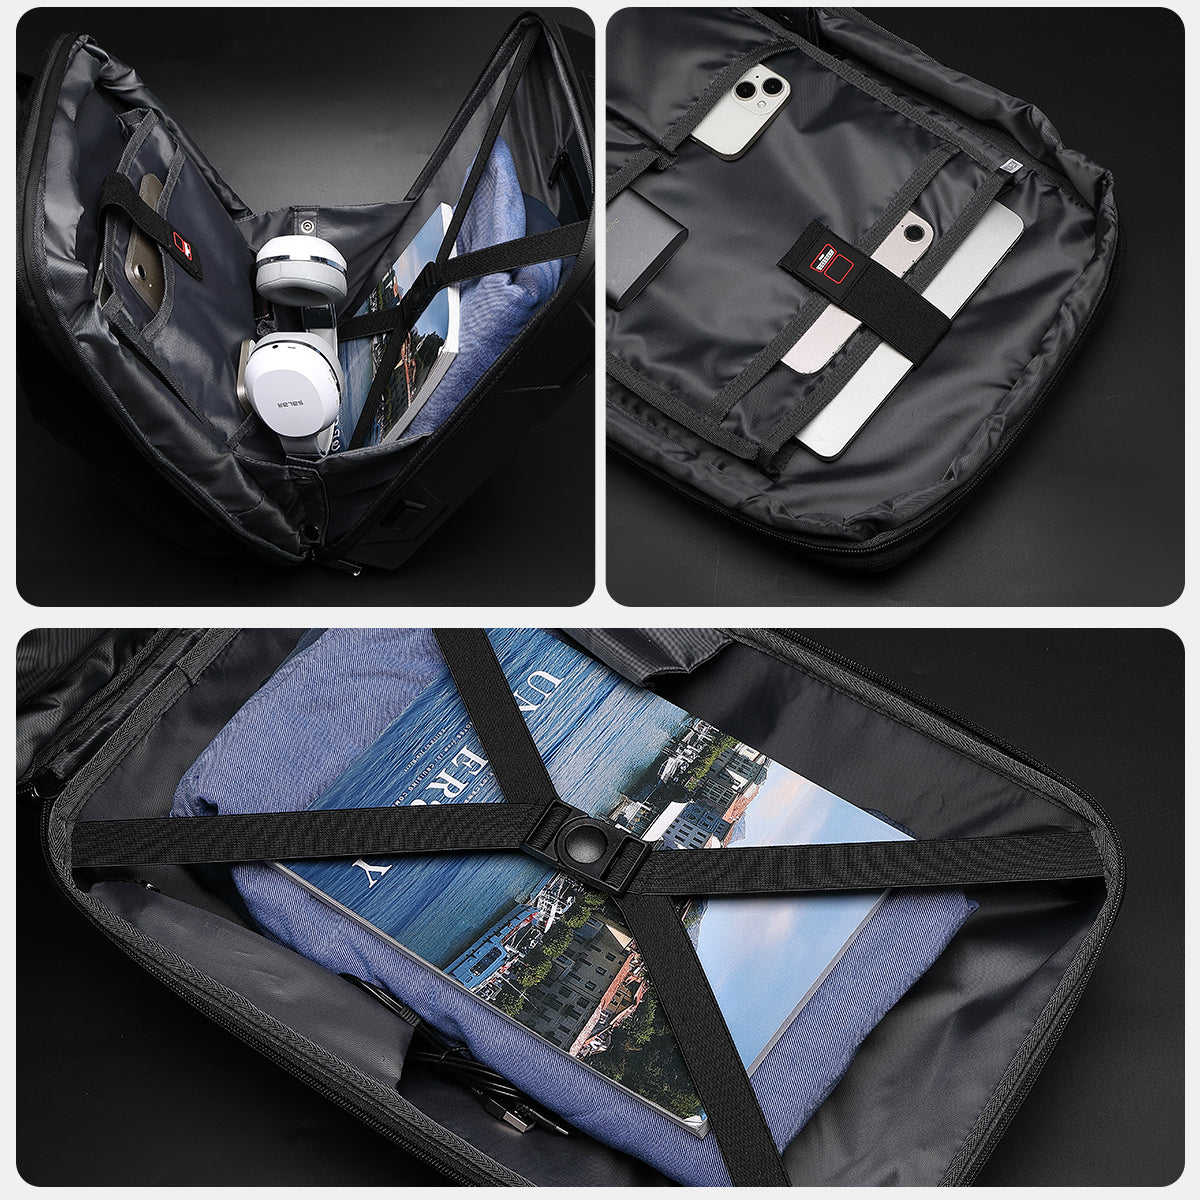 Cyberbackpack Sacoche extensible et fonctionnelle pour ordinateur portable pour le travail, les jeux et les voyages – Durable, élégante et sécurisée, équipée d'un port de chargement USB